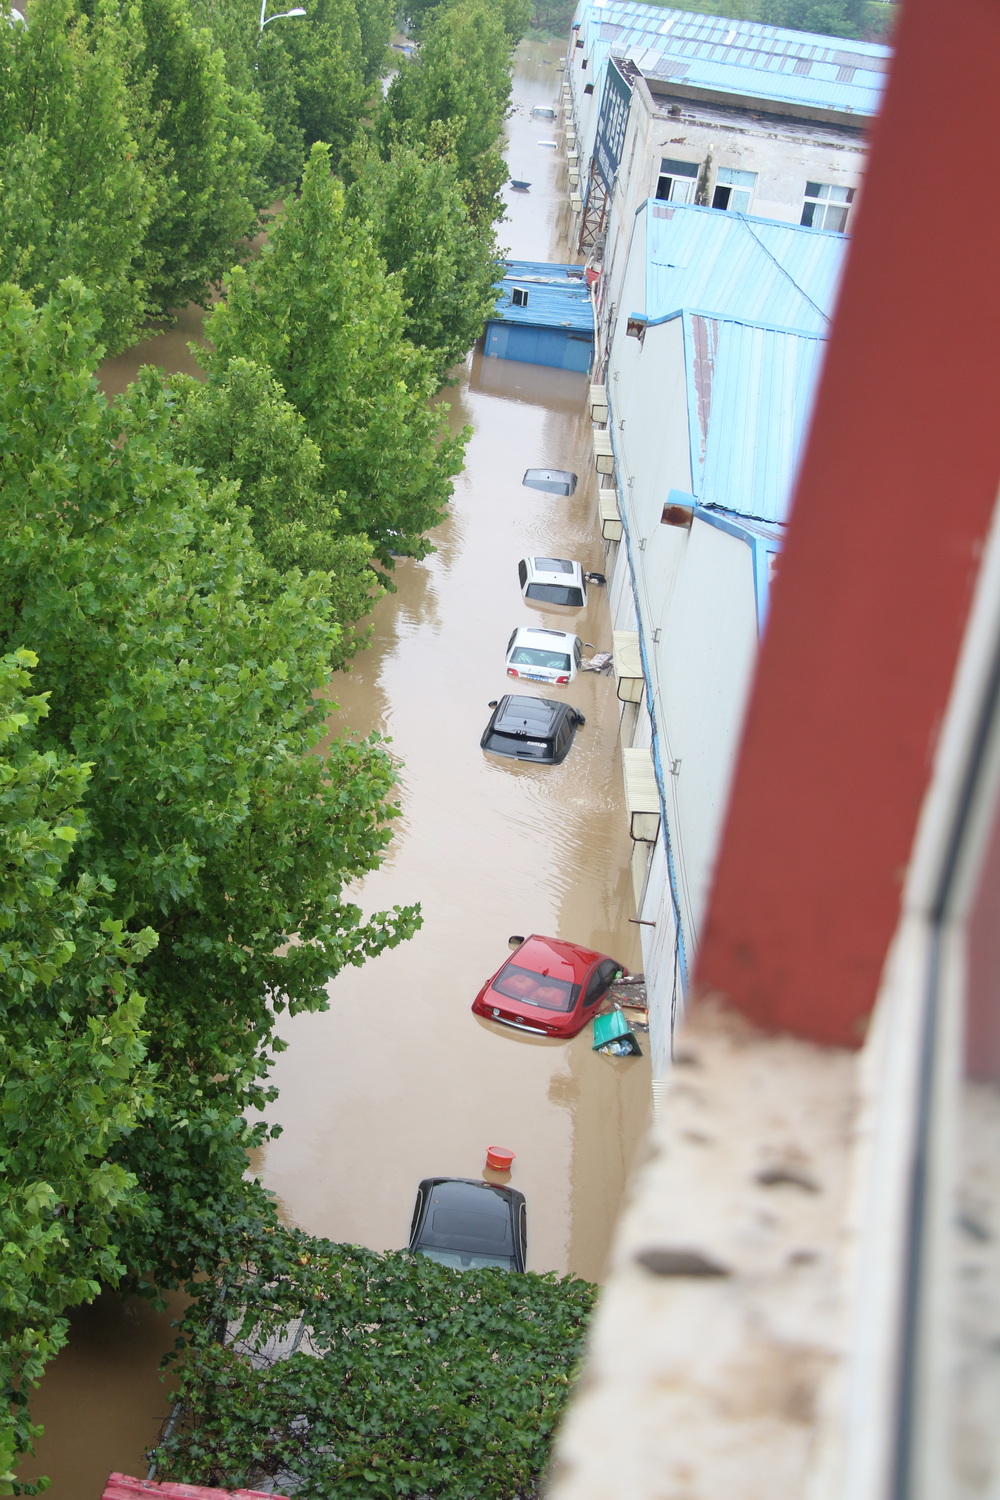 不少小区内停放的车辆都被淹没。